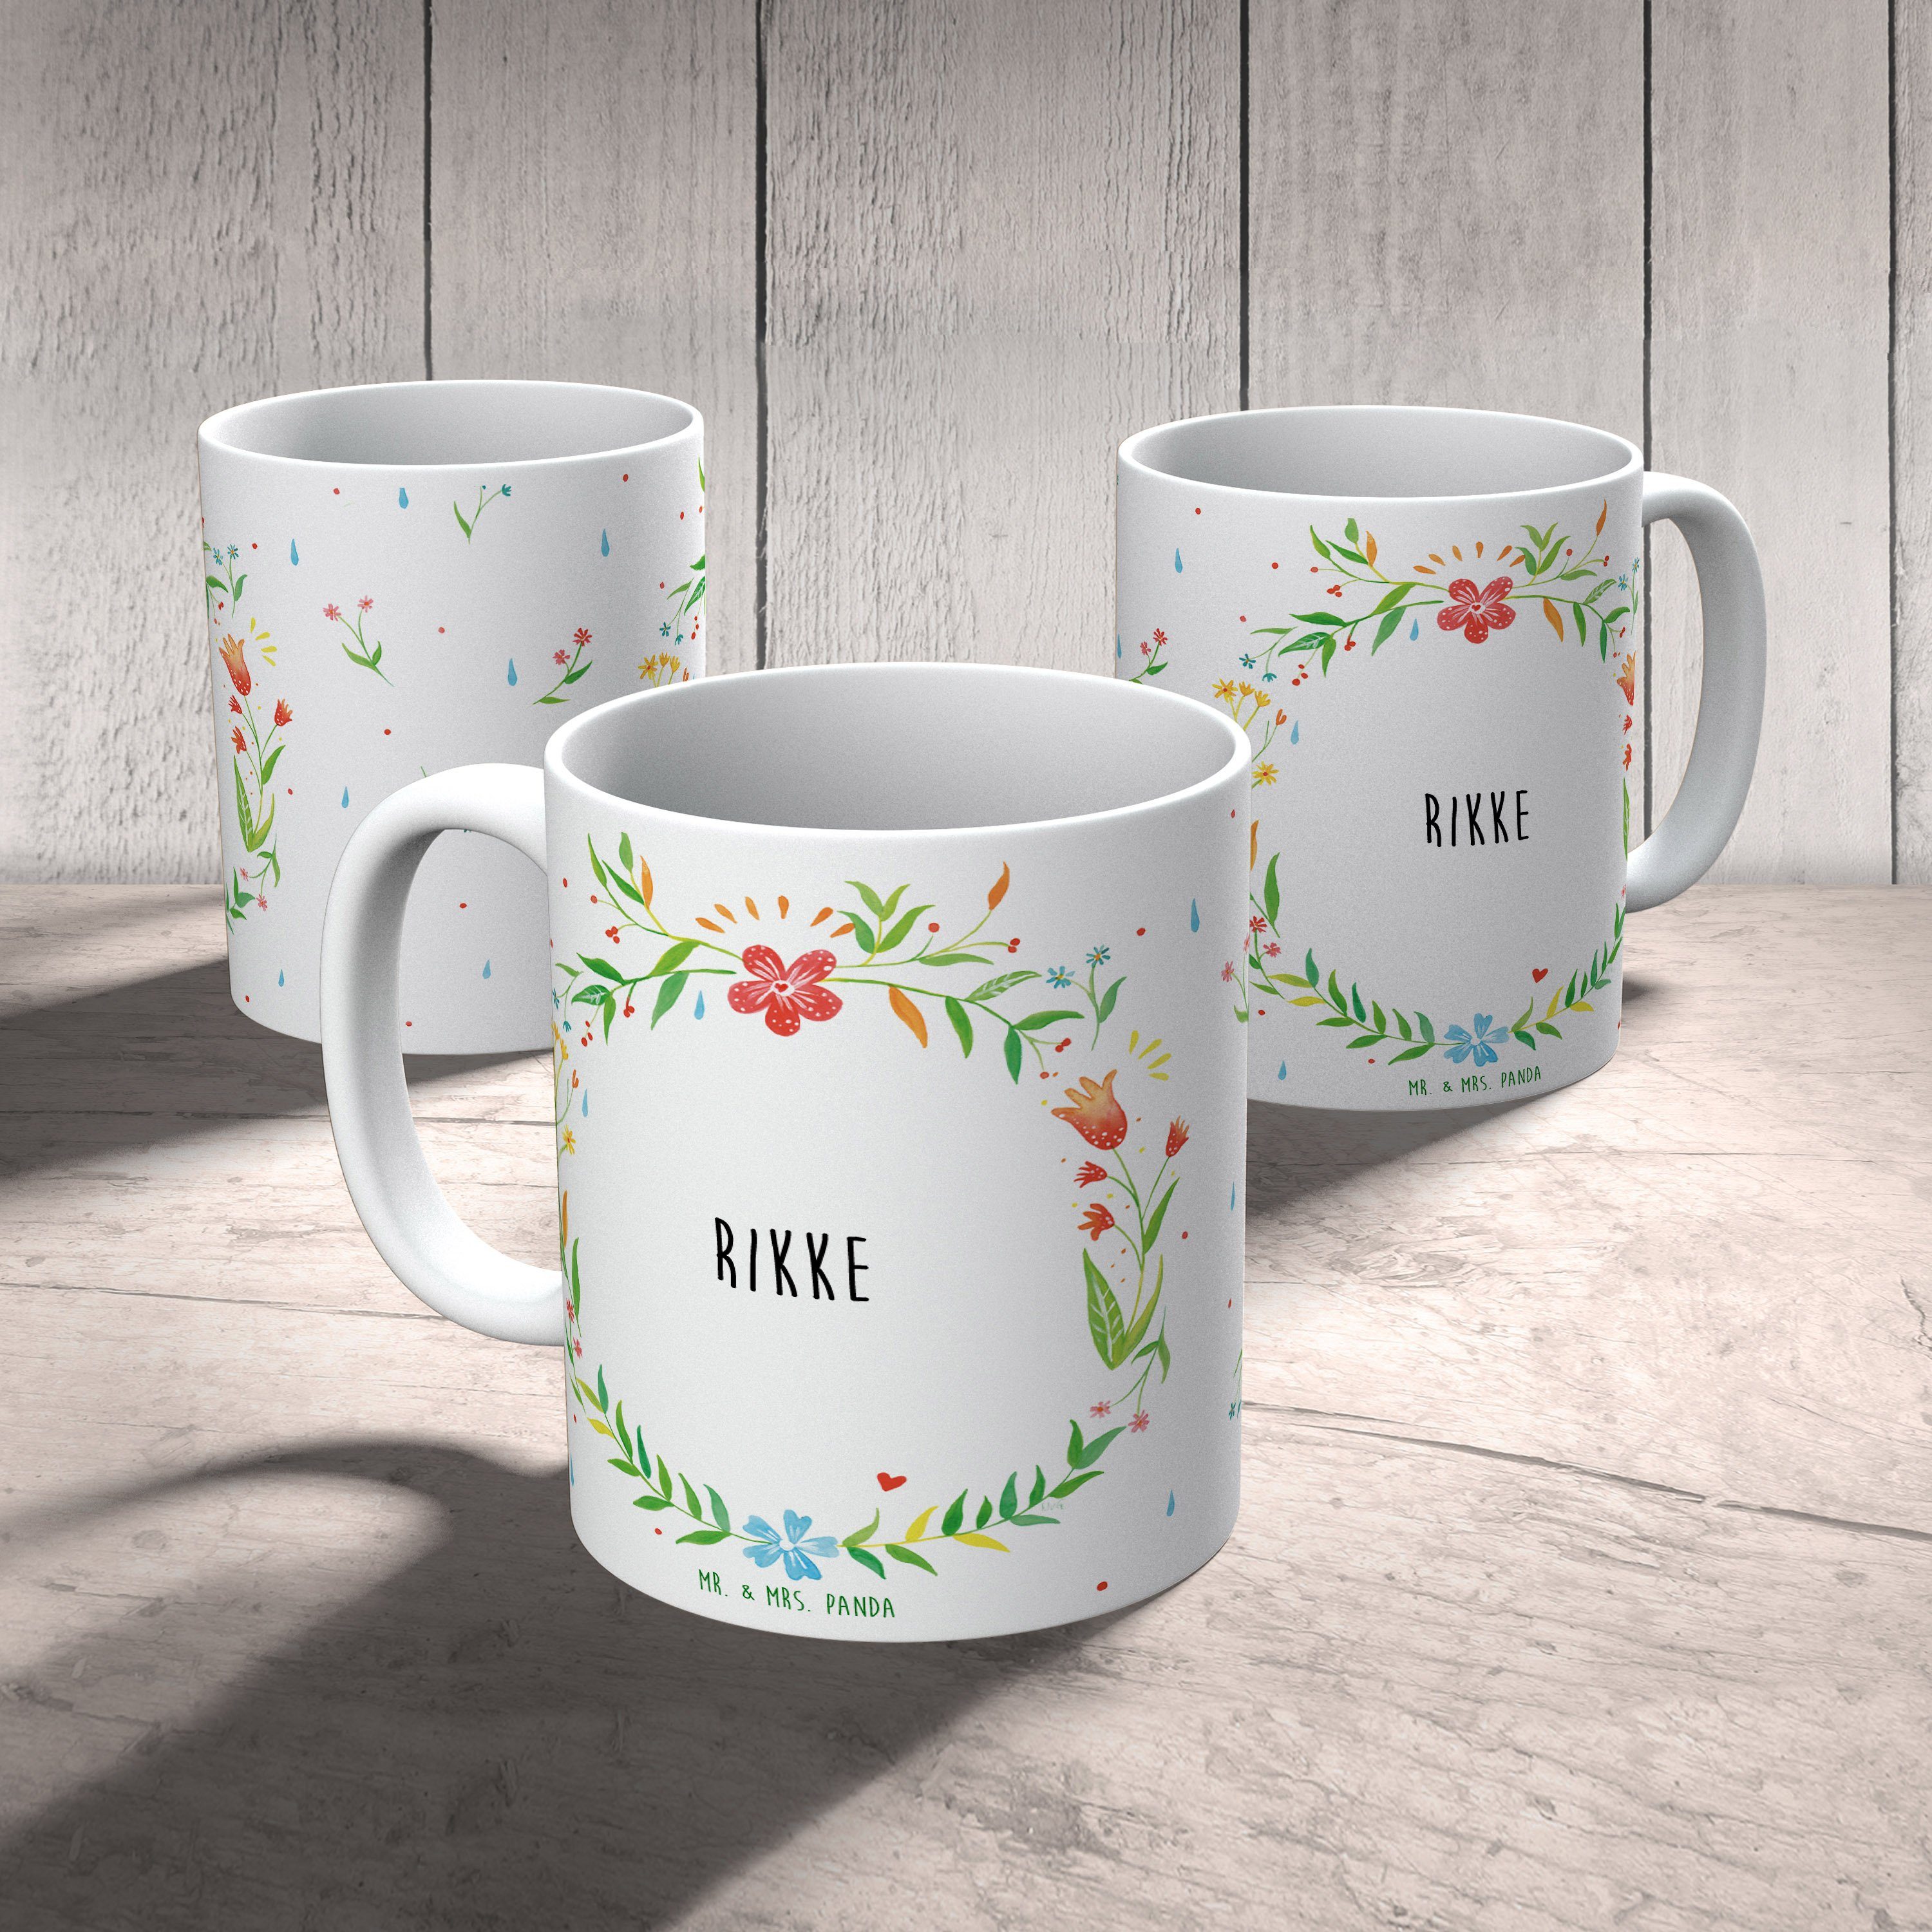 Mr. & Mrs. Panda Tasse Kaffeetasse, - Porzellantasse, Rikke Keramik Kerami, Geschenk Geschenk, Tasse